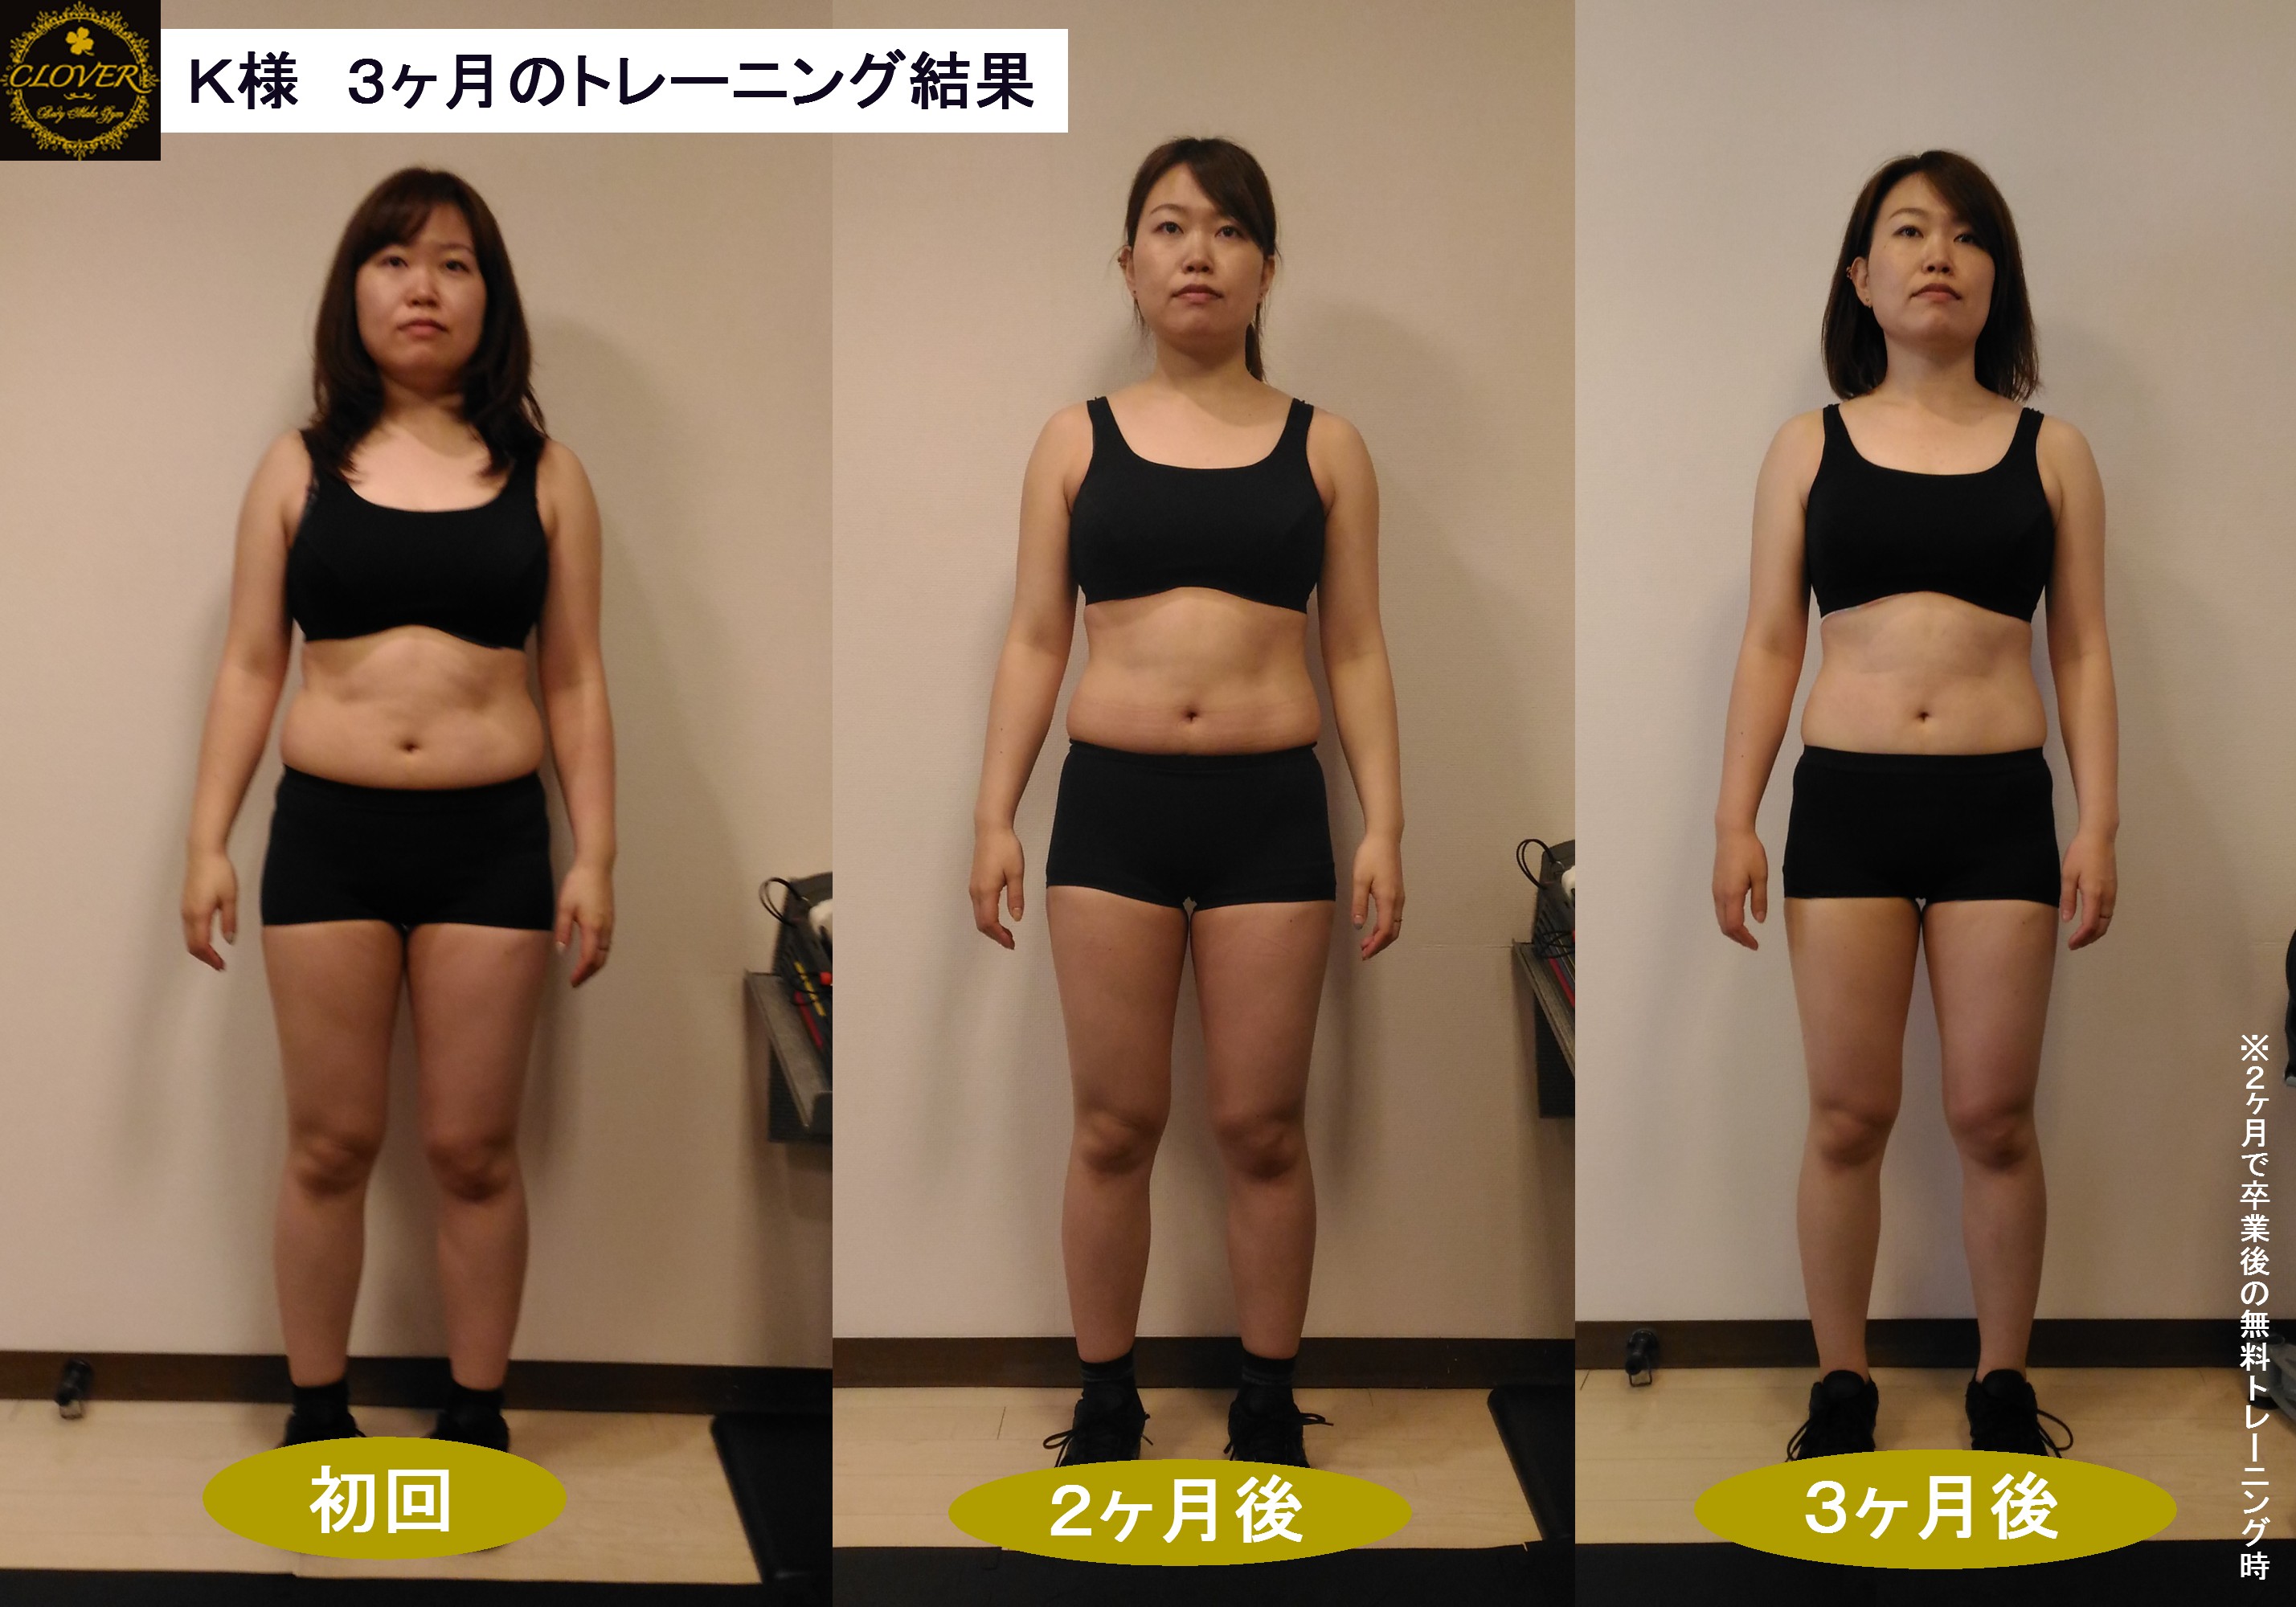 ダイエットビフォーアフター 2ヶ月の体の変化 Body Make Gym Clover